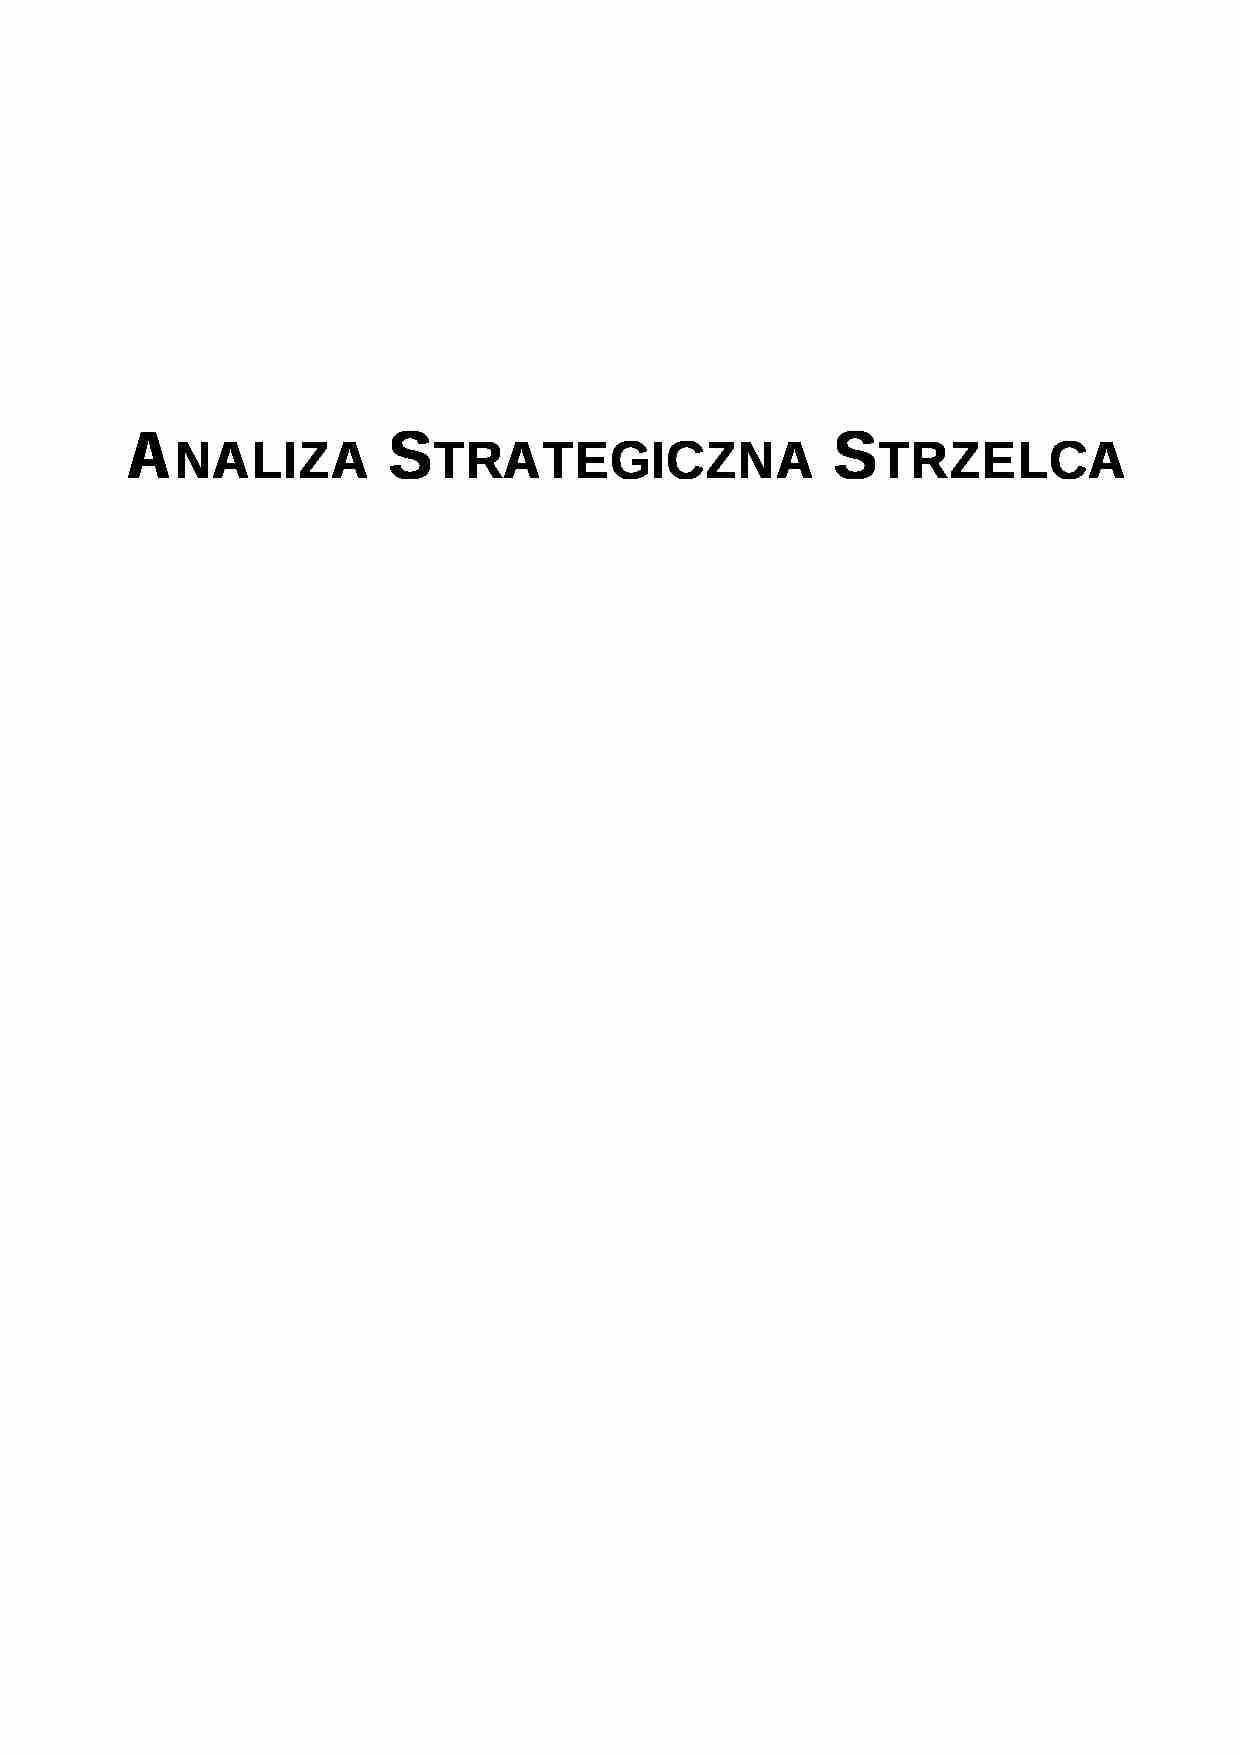 Analiza strategiczna  - browar - strona 1